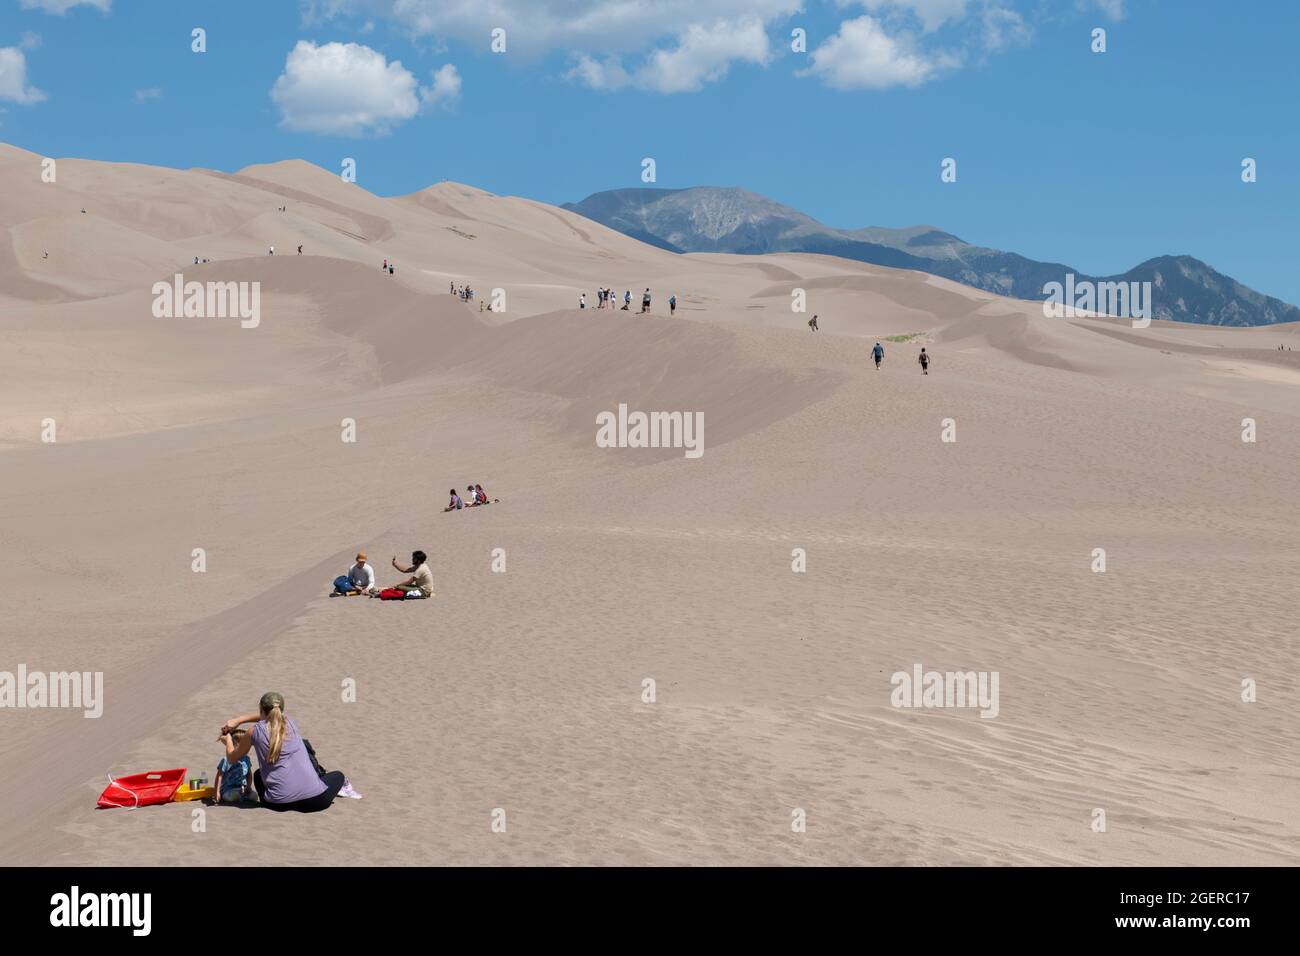 Colorado, San Luis Valley, Great Sand Dunes National Park. Grandi dune di sabbia alte fino a 750 metri. Turisti che si godono le dune. Foto Stock